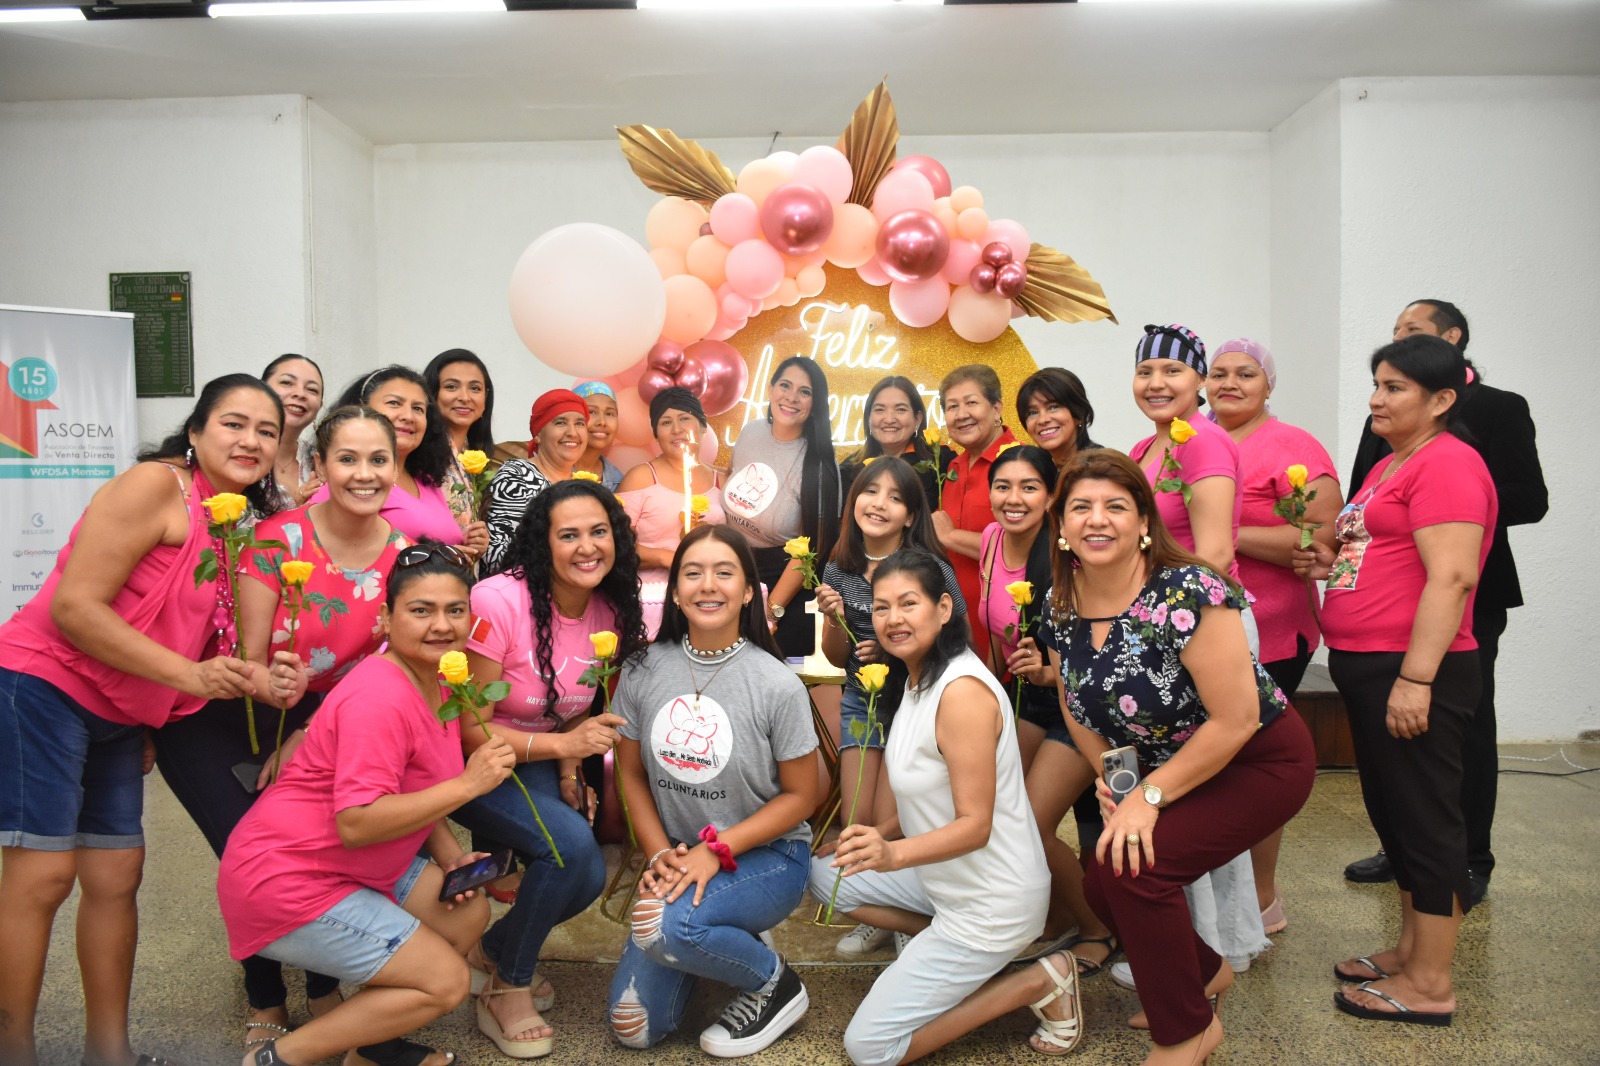 ASOEM: Más de una década de apoyo a mujeres en tratamiento oncológico